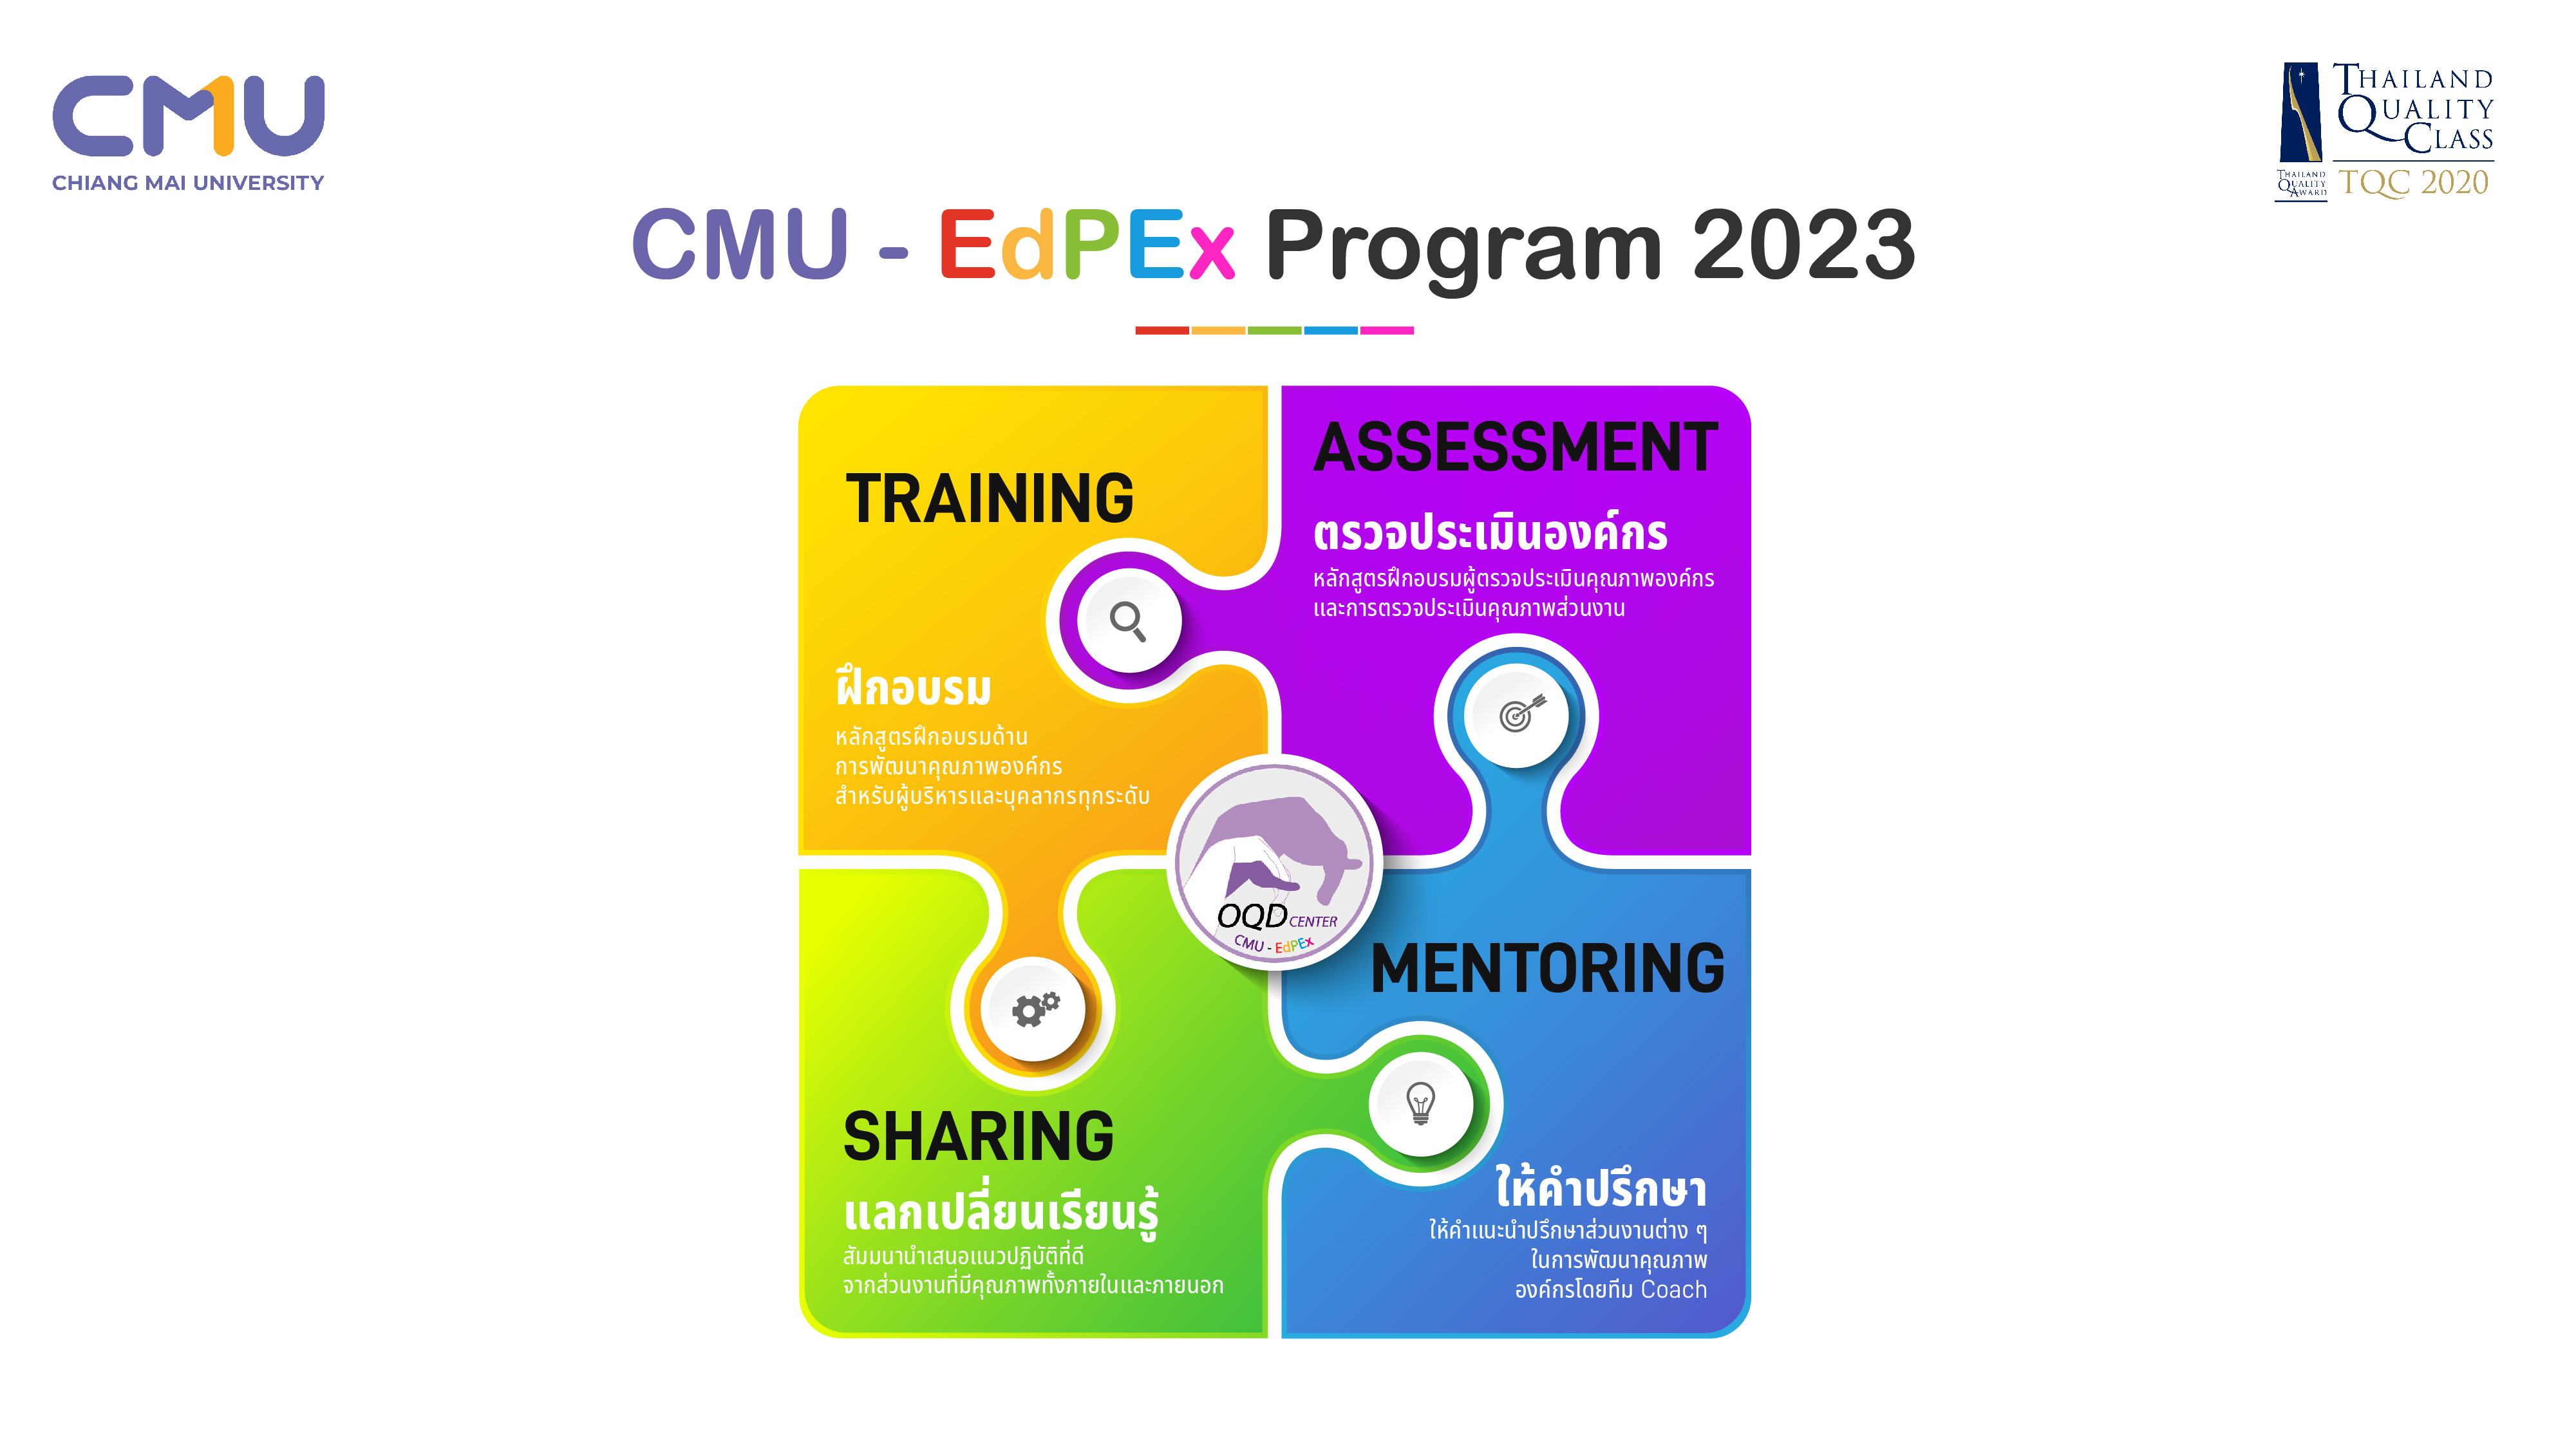 กิจกรรมการพัฒนาคุณภาพองค์กร ตามแผนการดำเนินงาน CMU-EdPEx ประจำปี 2566